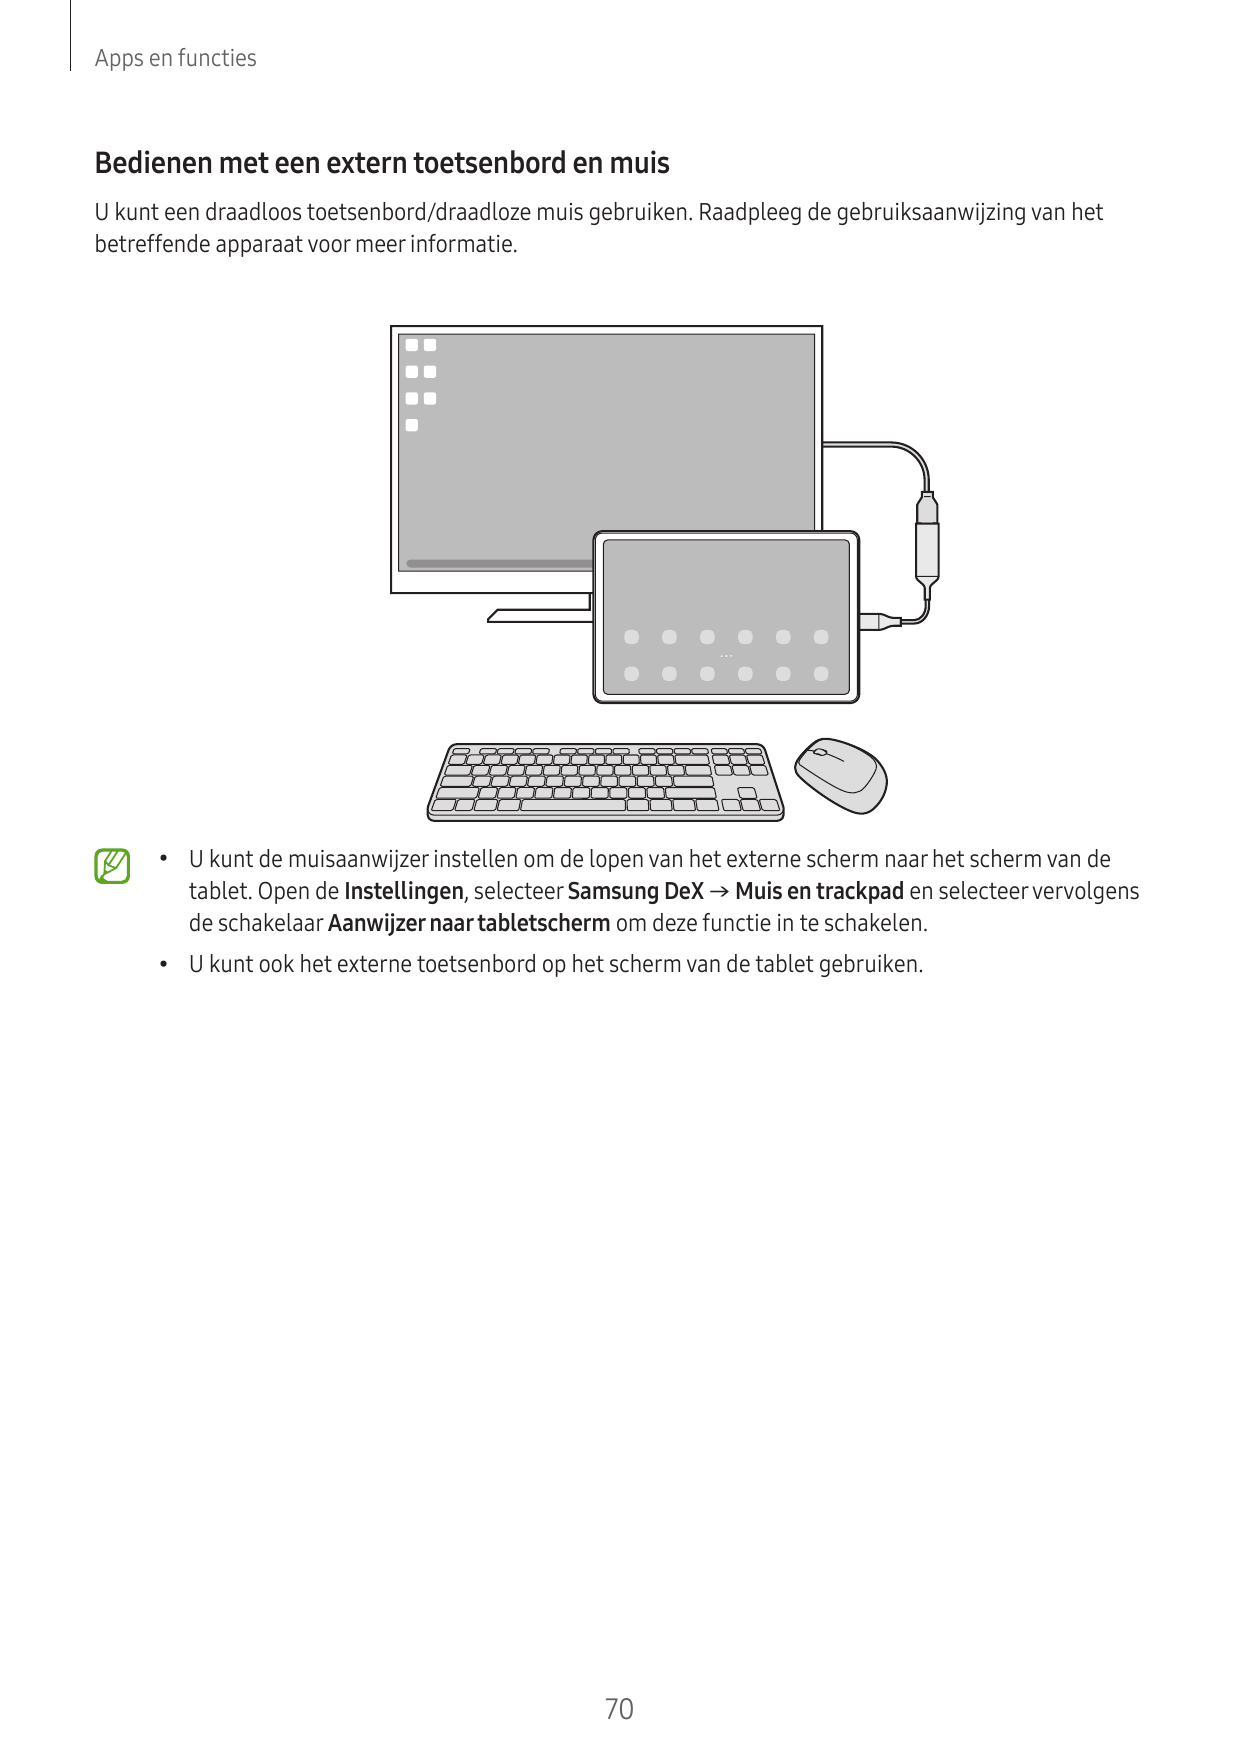 Apps en functiesBedienen met een extern toetsenbord en muisU kunt een draadloos toetsenbord/draadloze muis gebruiken. Raadpleeg 